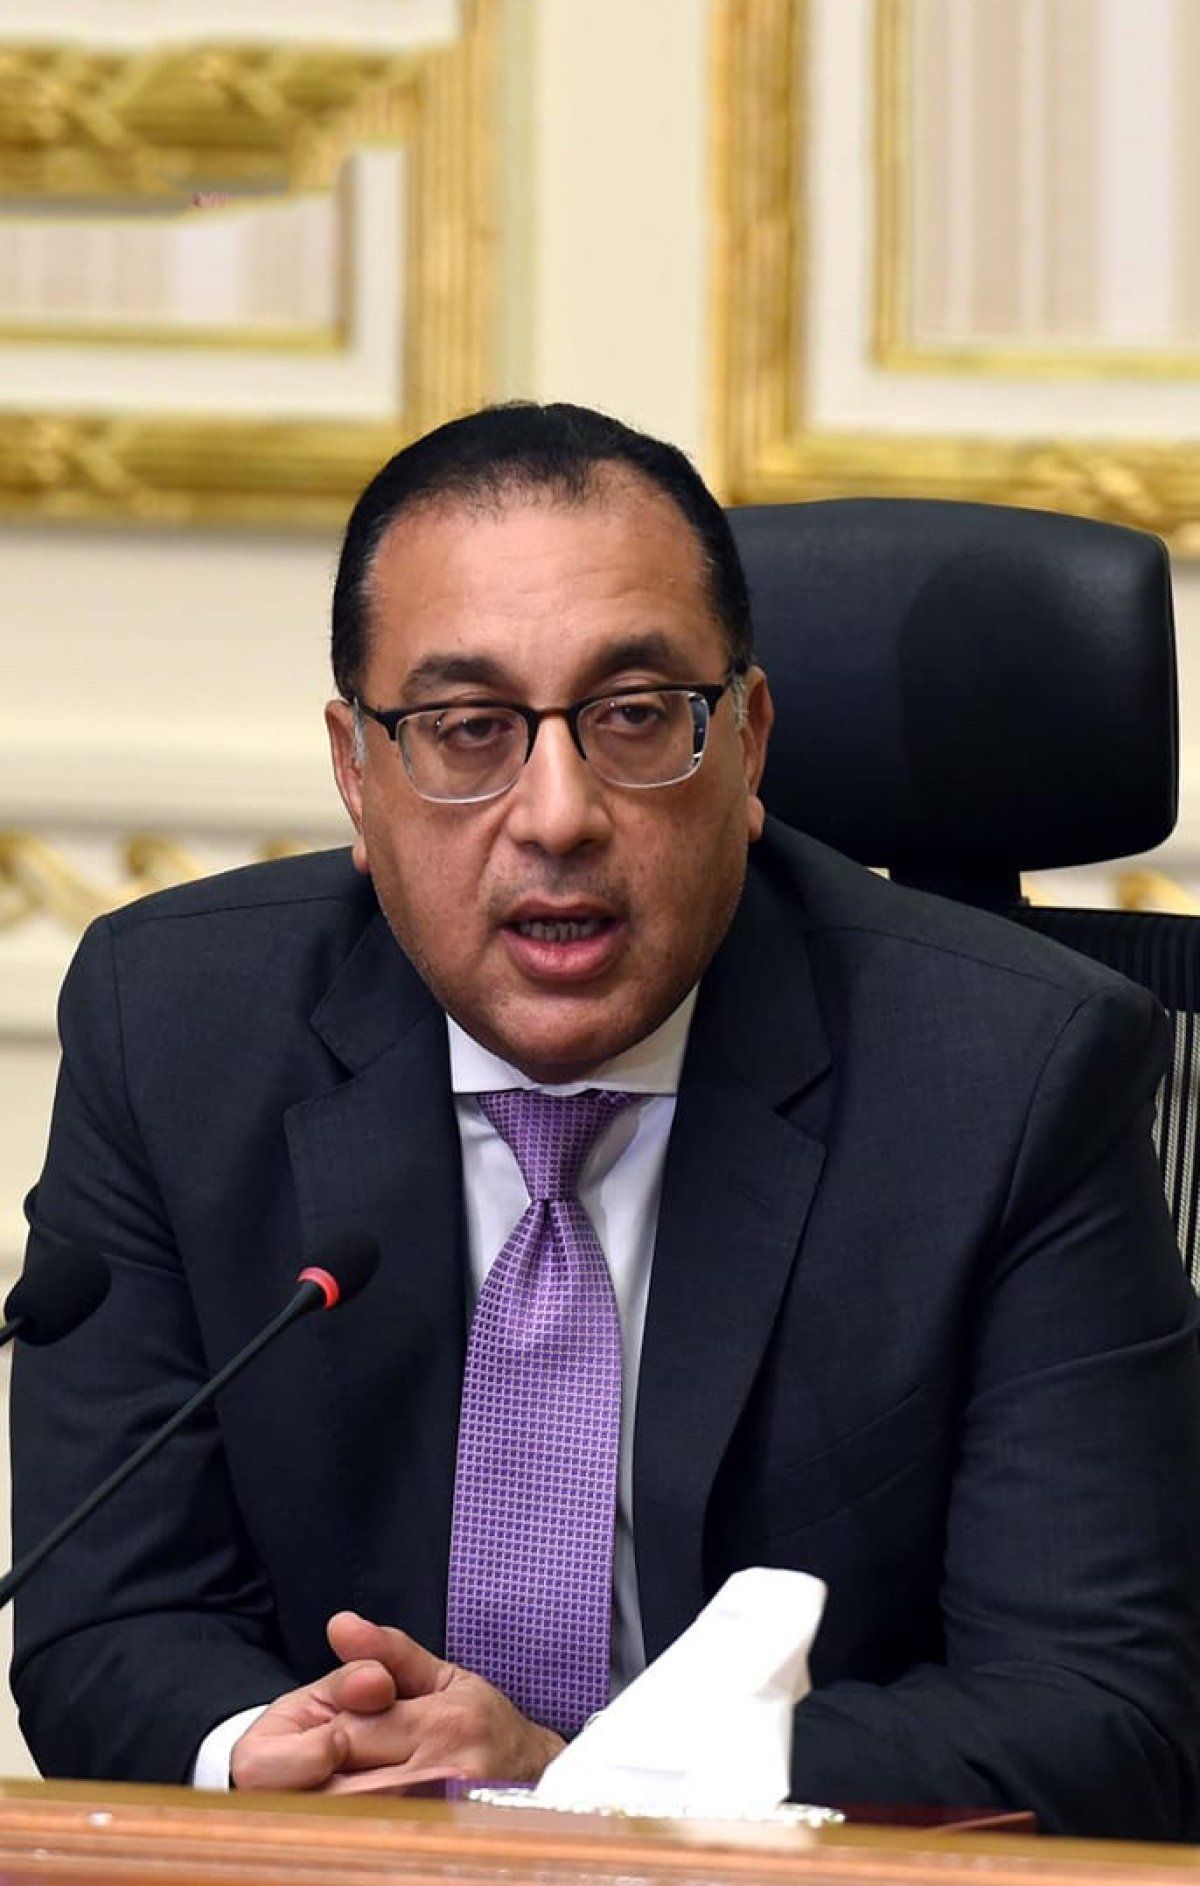 بقرار من رئيس الوزراء: ندب محمود السقا للعمل مستشارا للطروحات لمدة عام